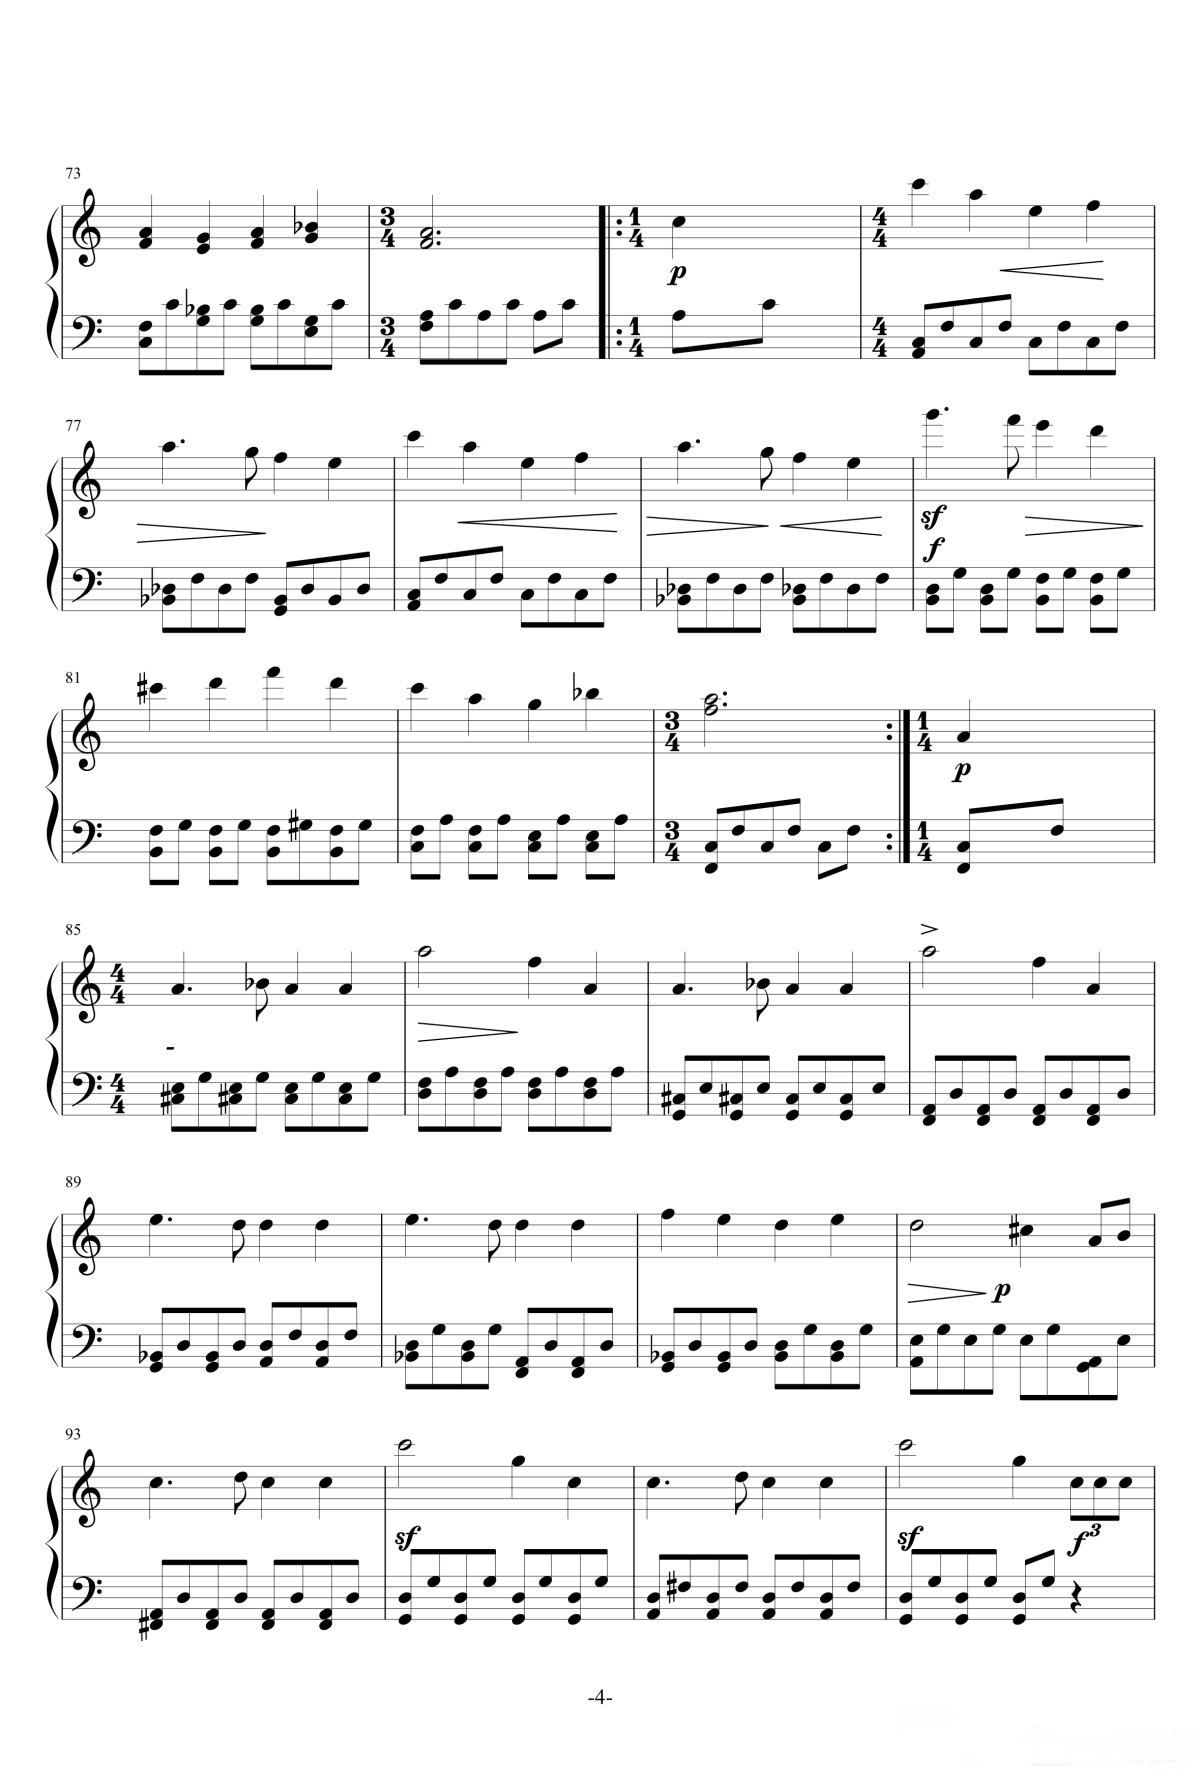 【婚礼进行曲】的钢琴谱简谱 – 门德尔松